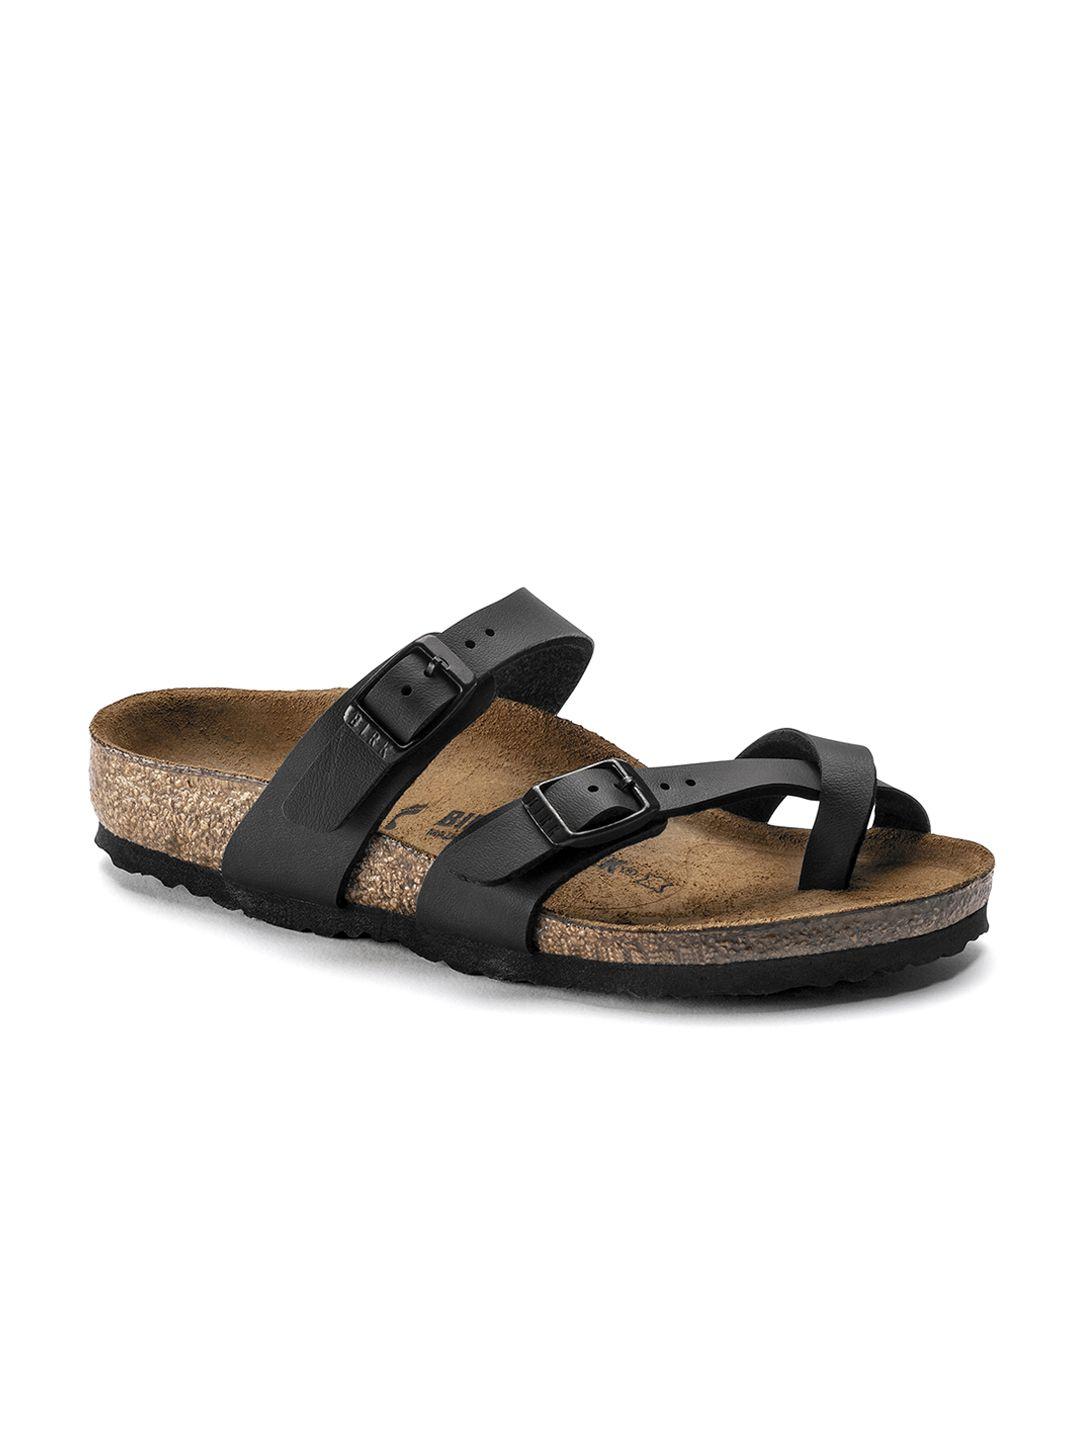 birkenstock girls mayari black narrow-width open toe flats